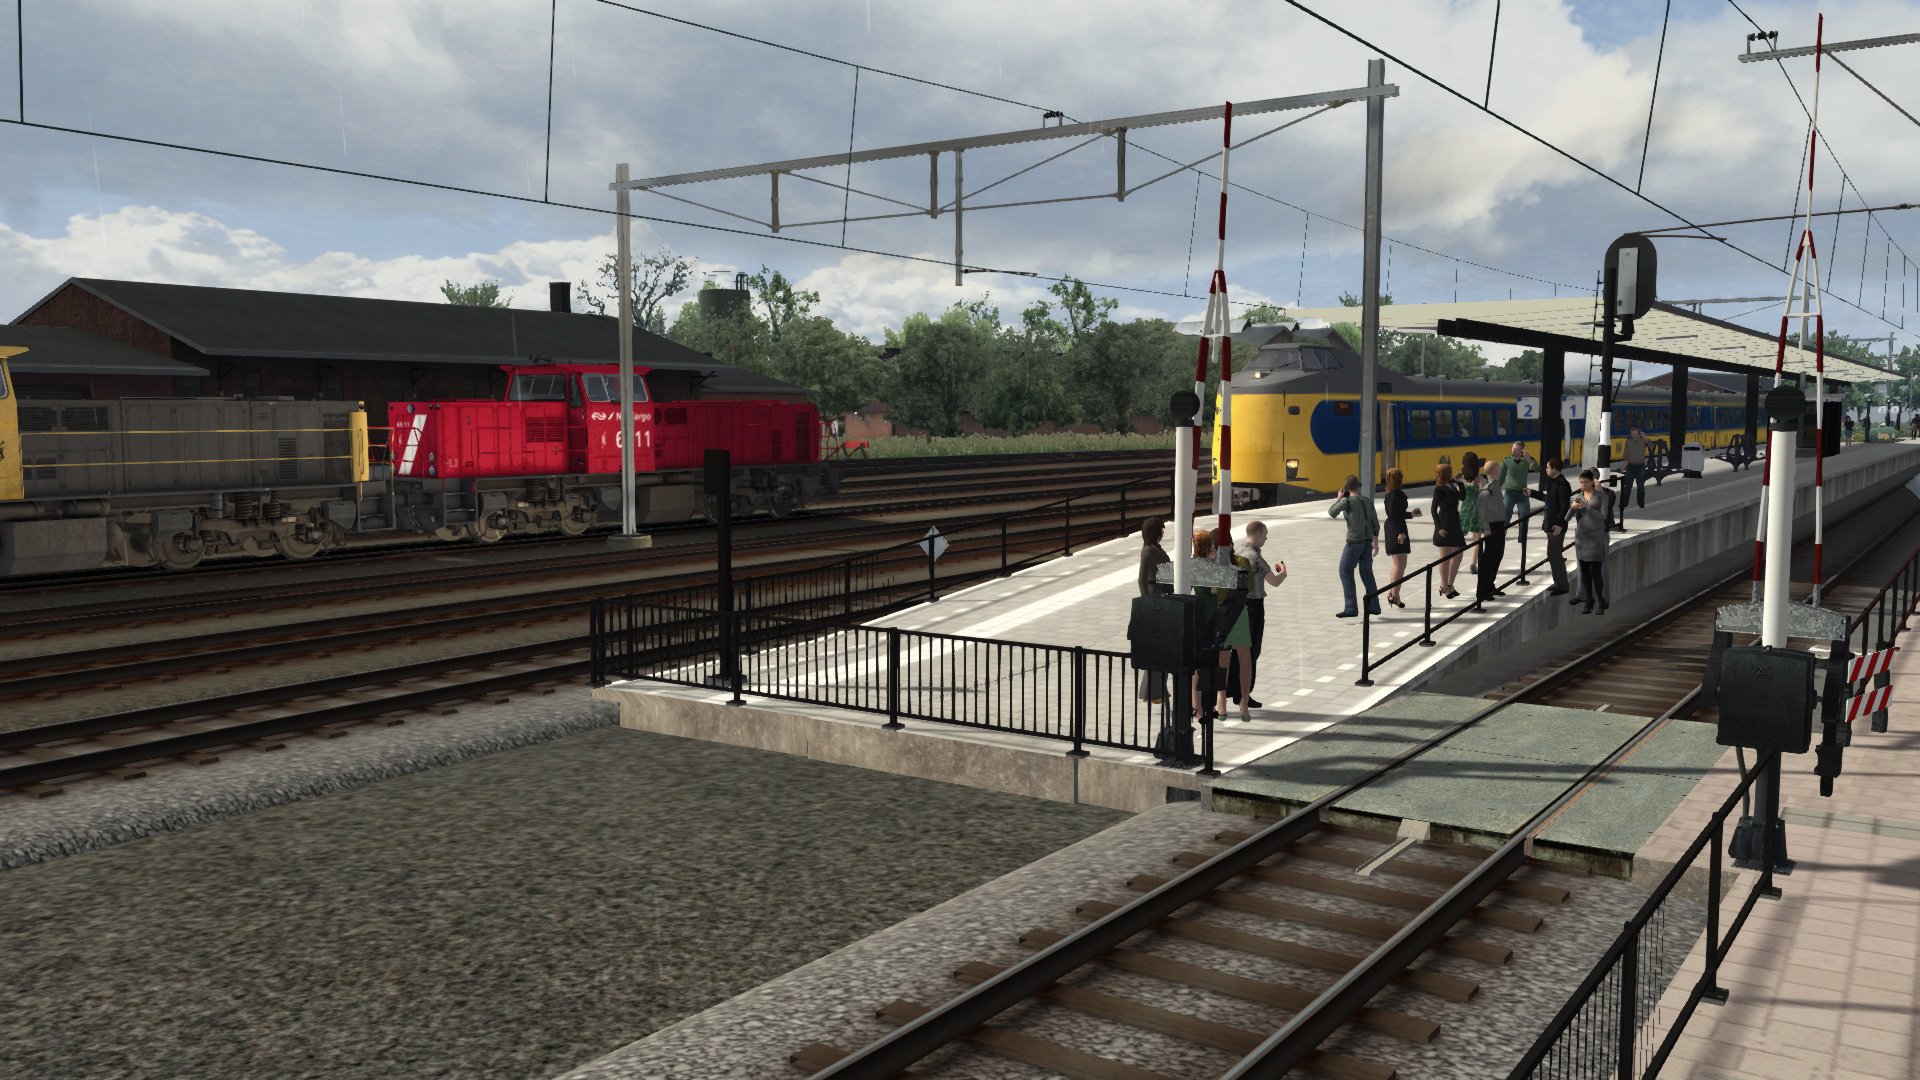 More information about "[Rail 21 - NS] IR 560 Emmen - Den Haag CS Deel 3"